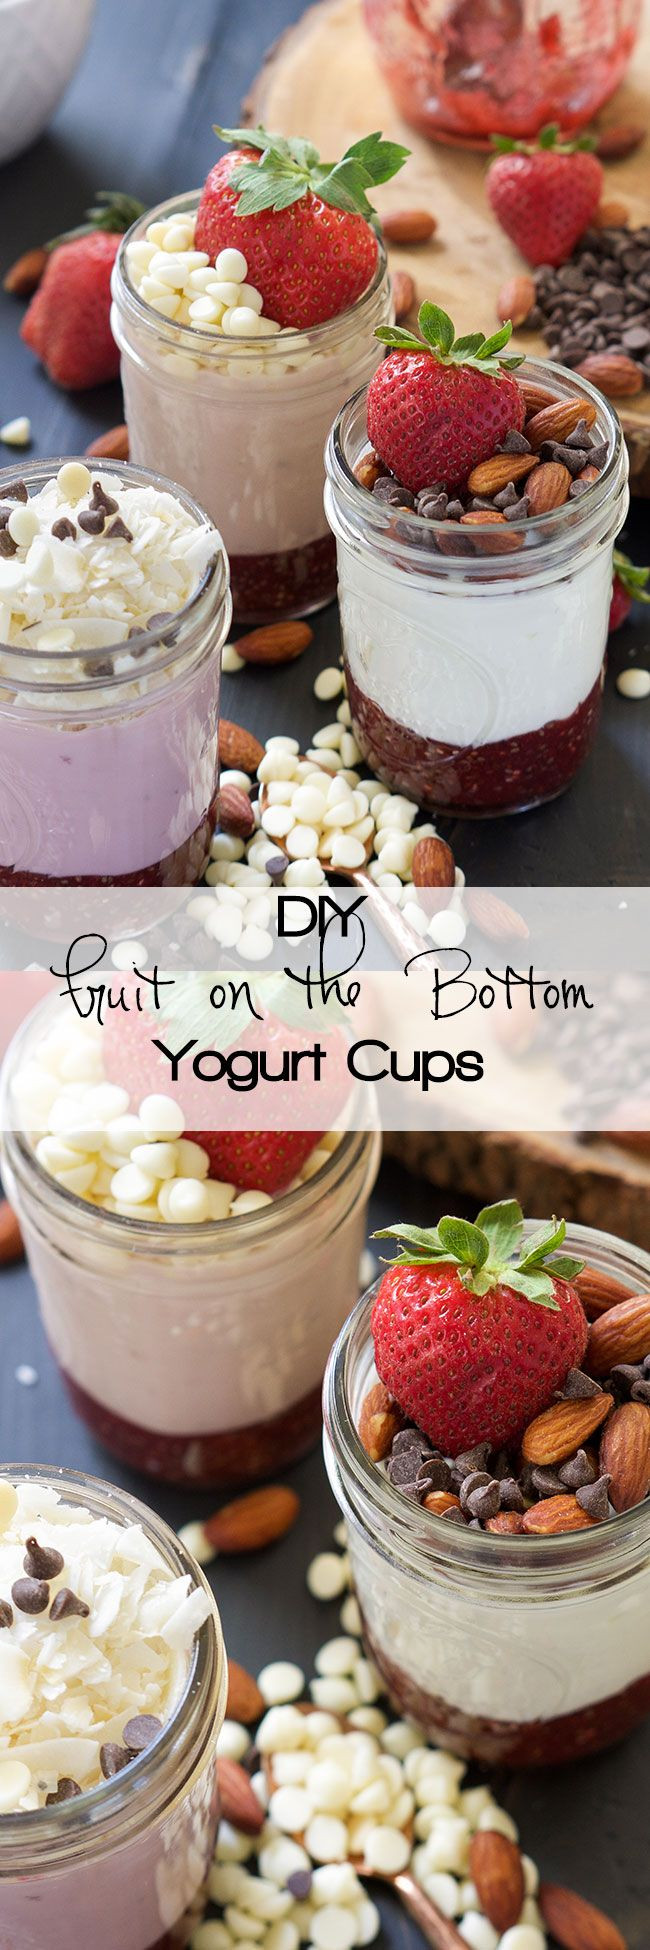 Healthy Store Bought Breakfast
 Best 25 Yogurt cups ideas on Pinterest